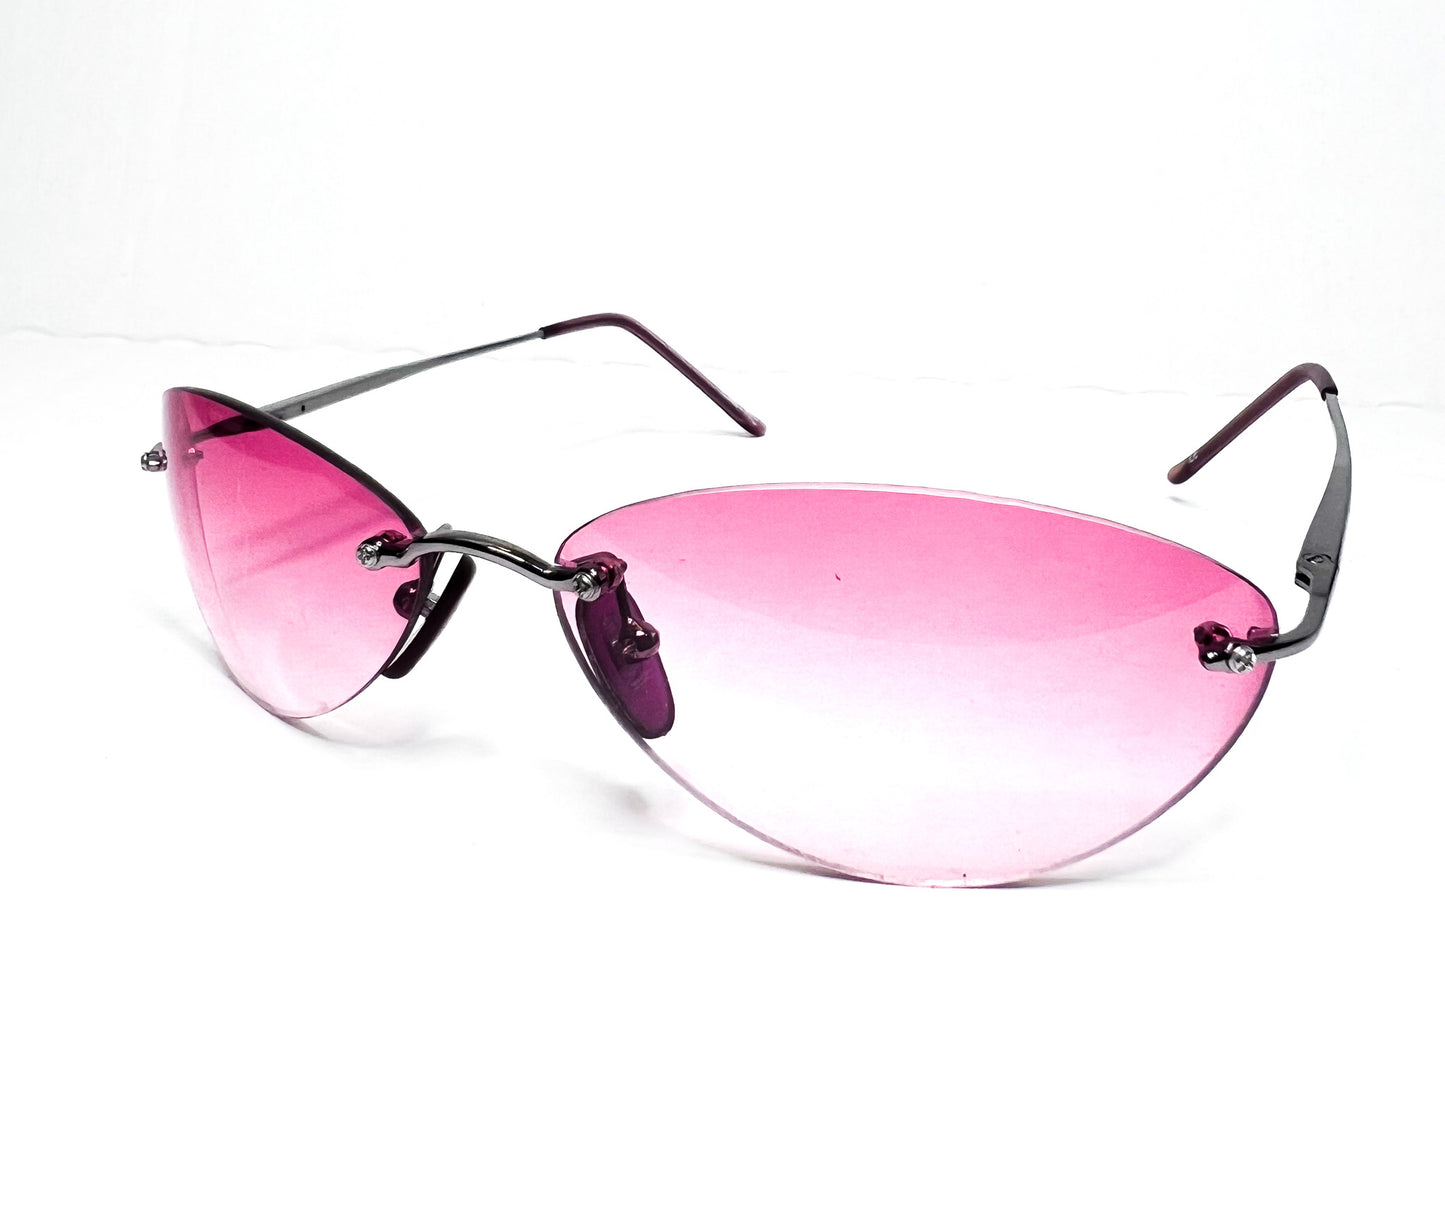 SX rimless retro pink lens sunglasses